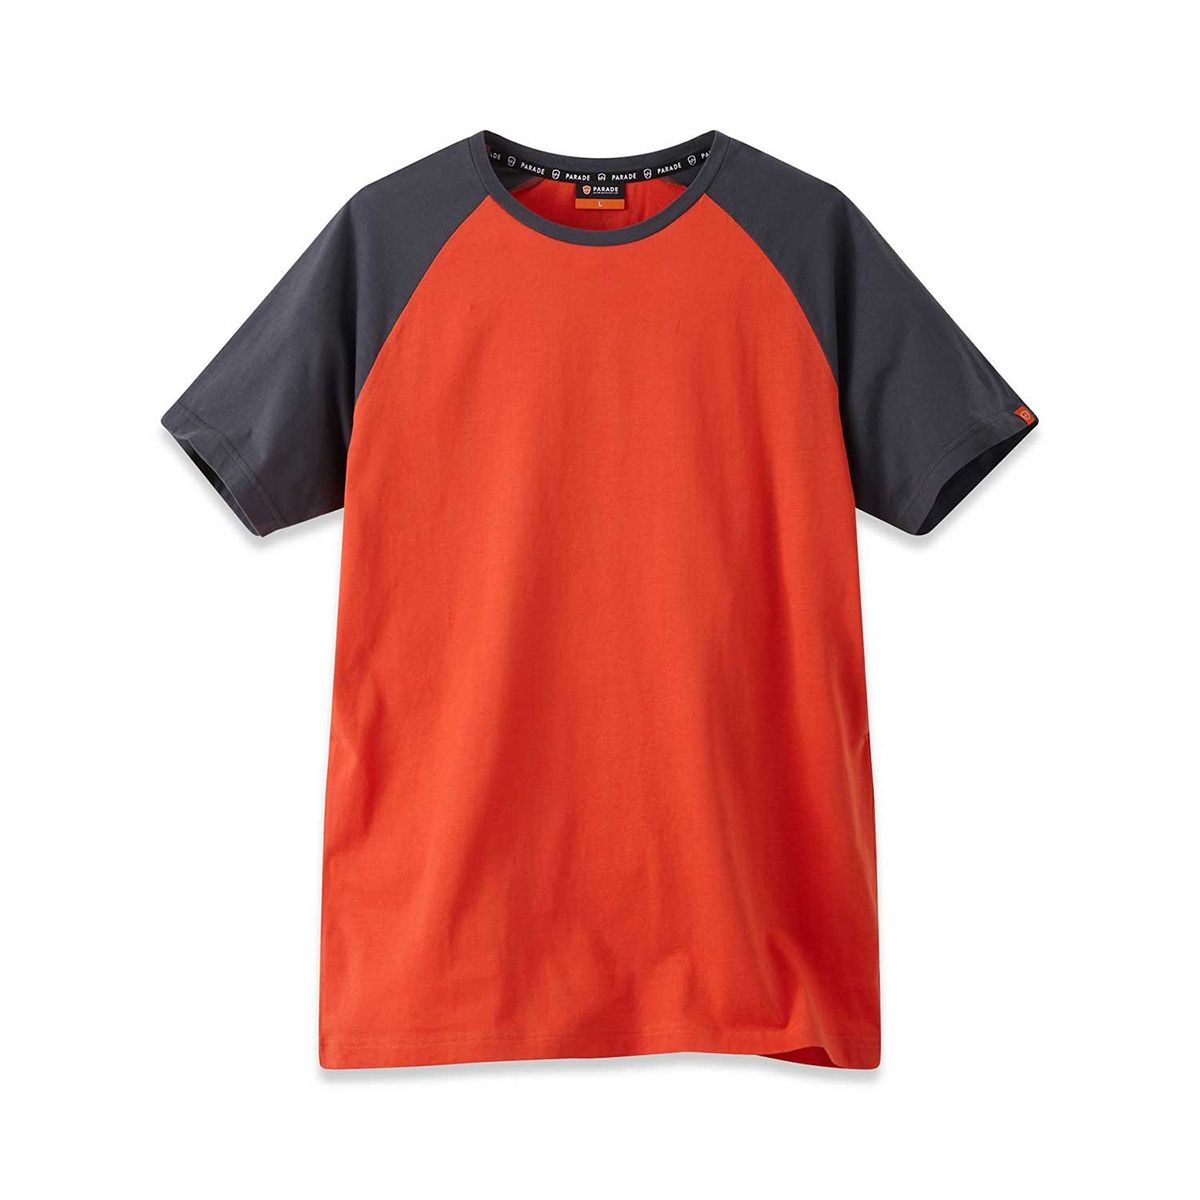 Parade Orange Cotton Short Sleeve T-Shirt, UK- XXXL, EUR- XXXL